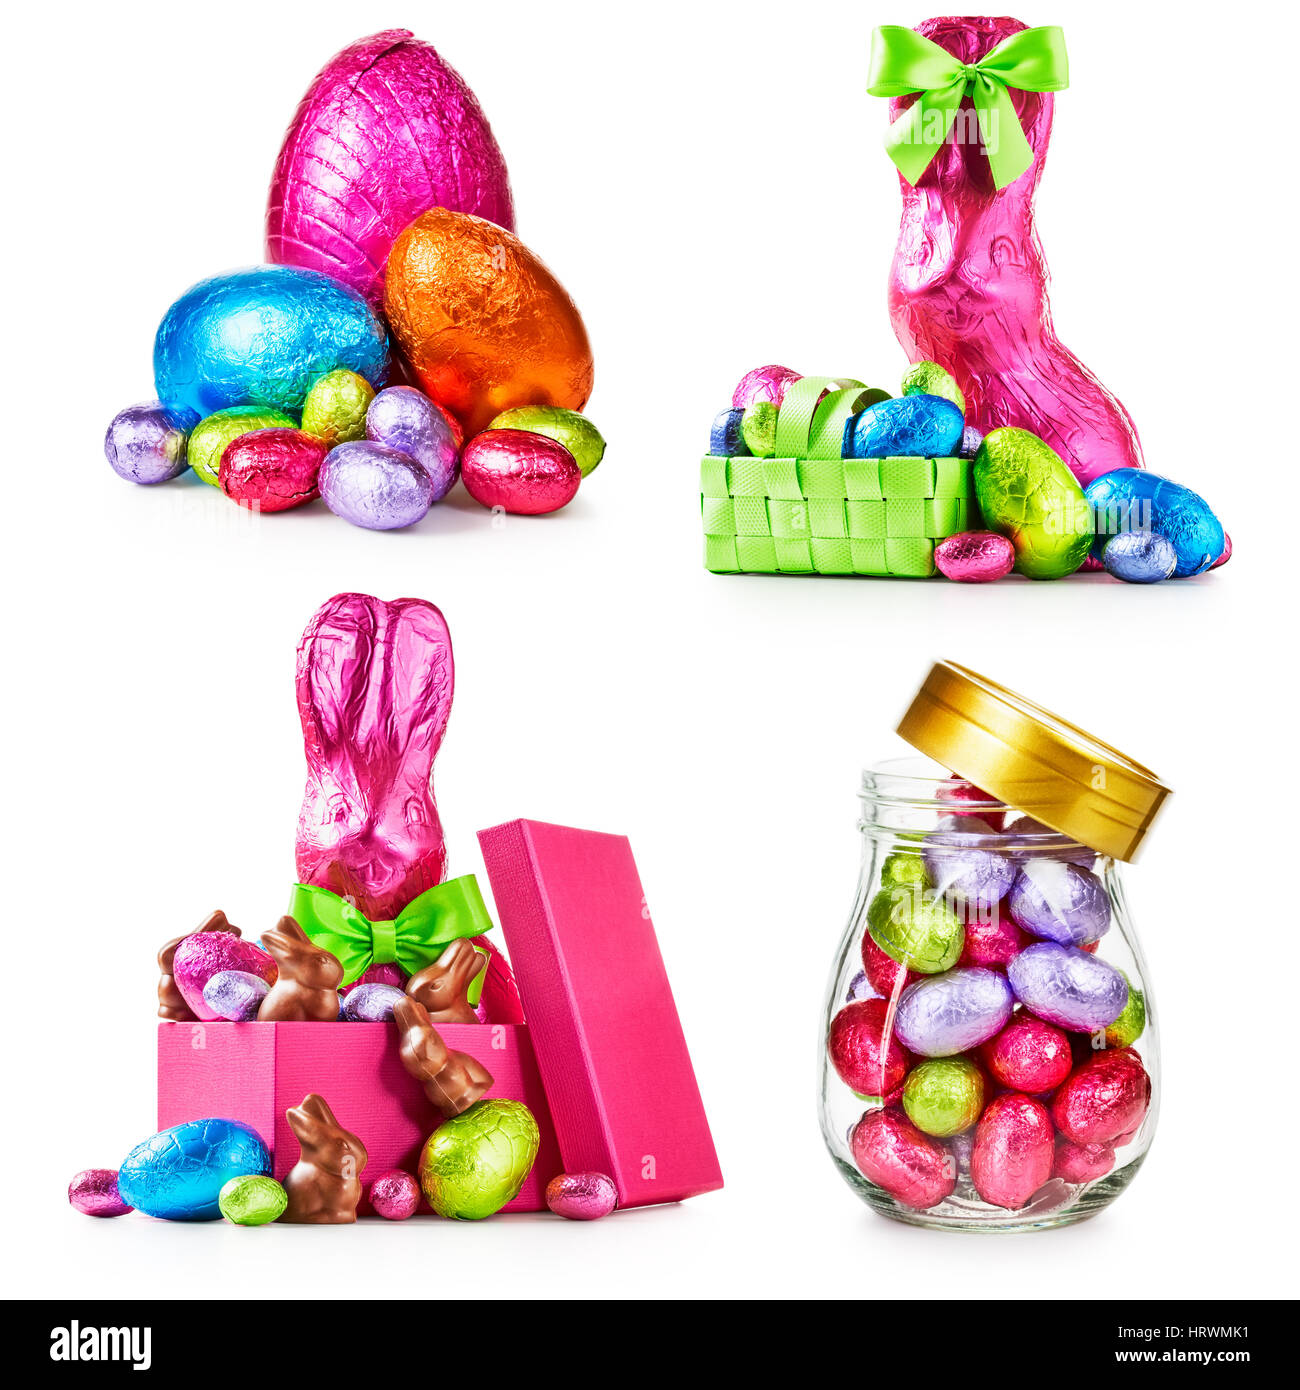 Huevos de pascua de chocolate, conejo con arco envuelto en lámina rosa, conejitos y caramelos de colores colección aislado sobre fondo blanco. Foto de stock